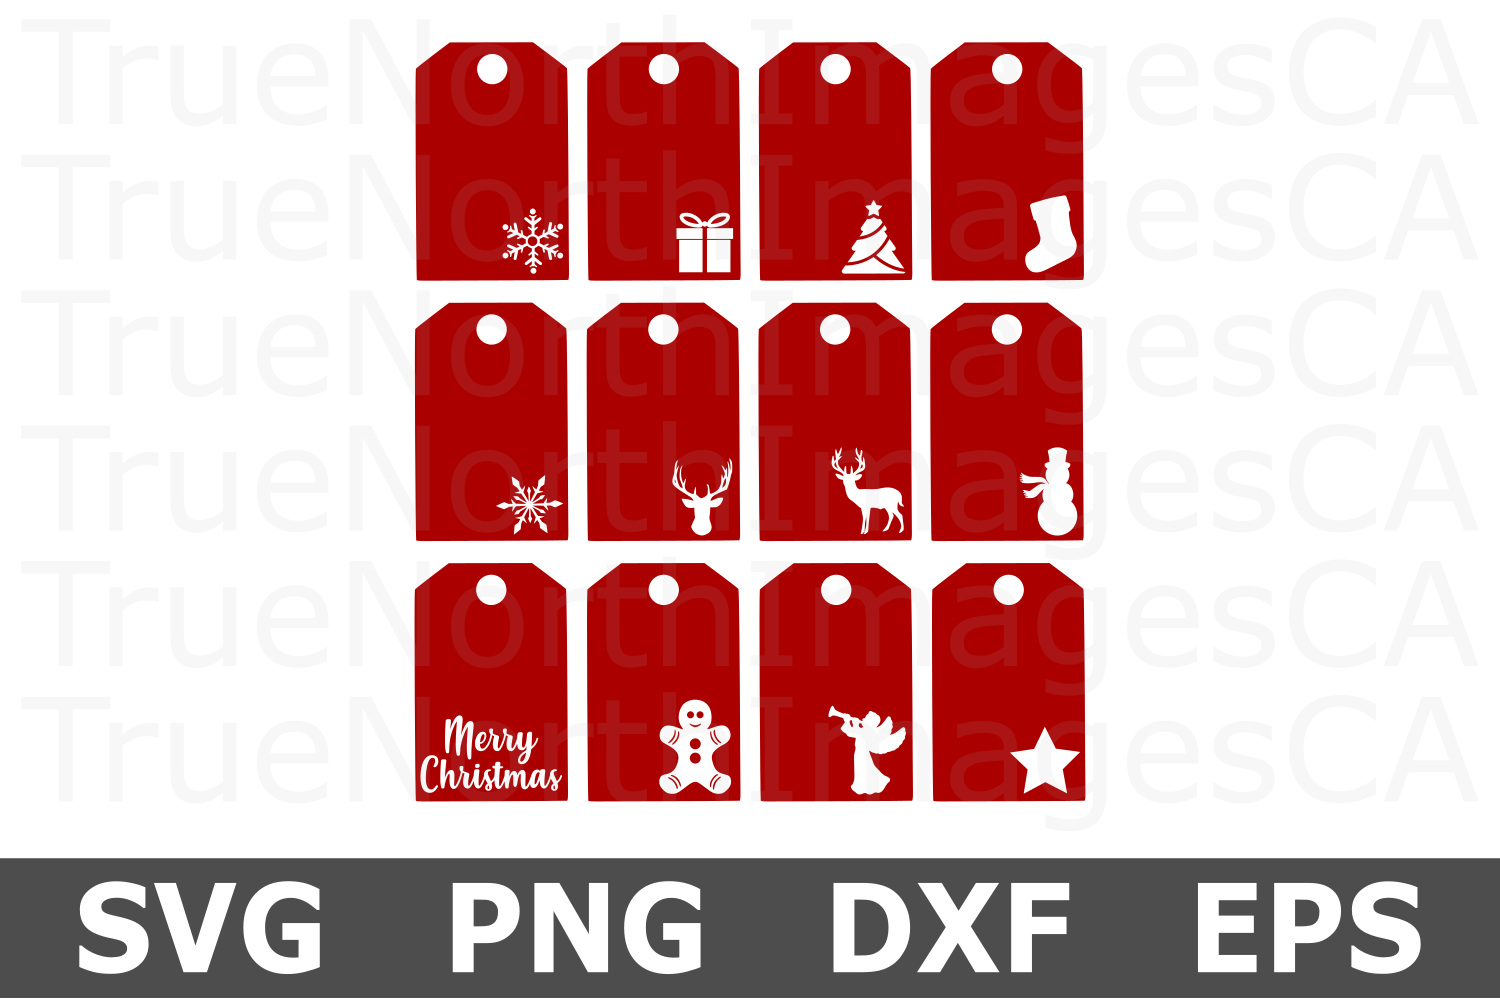 Christmas Gift Tags - A Christmas SVG Cut File